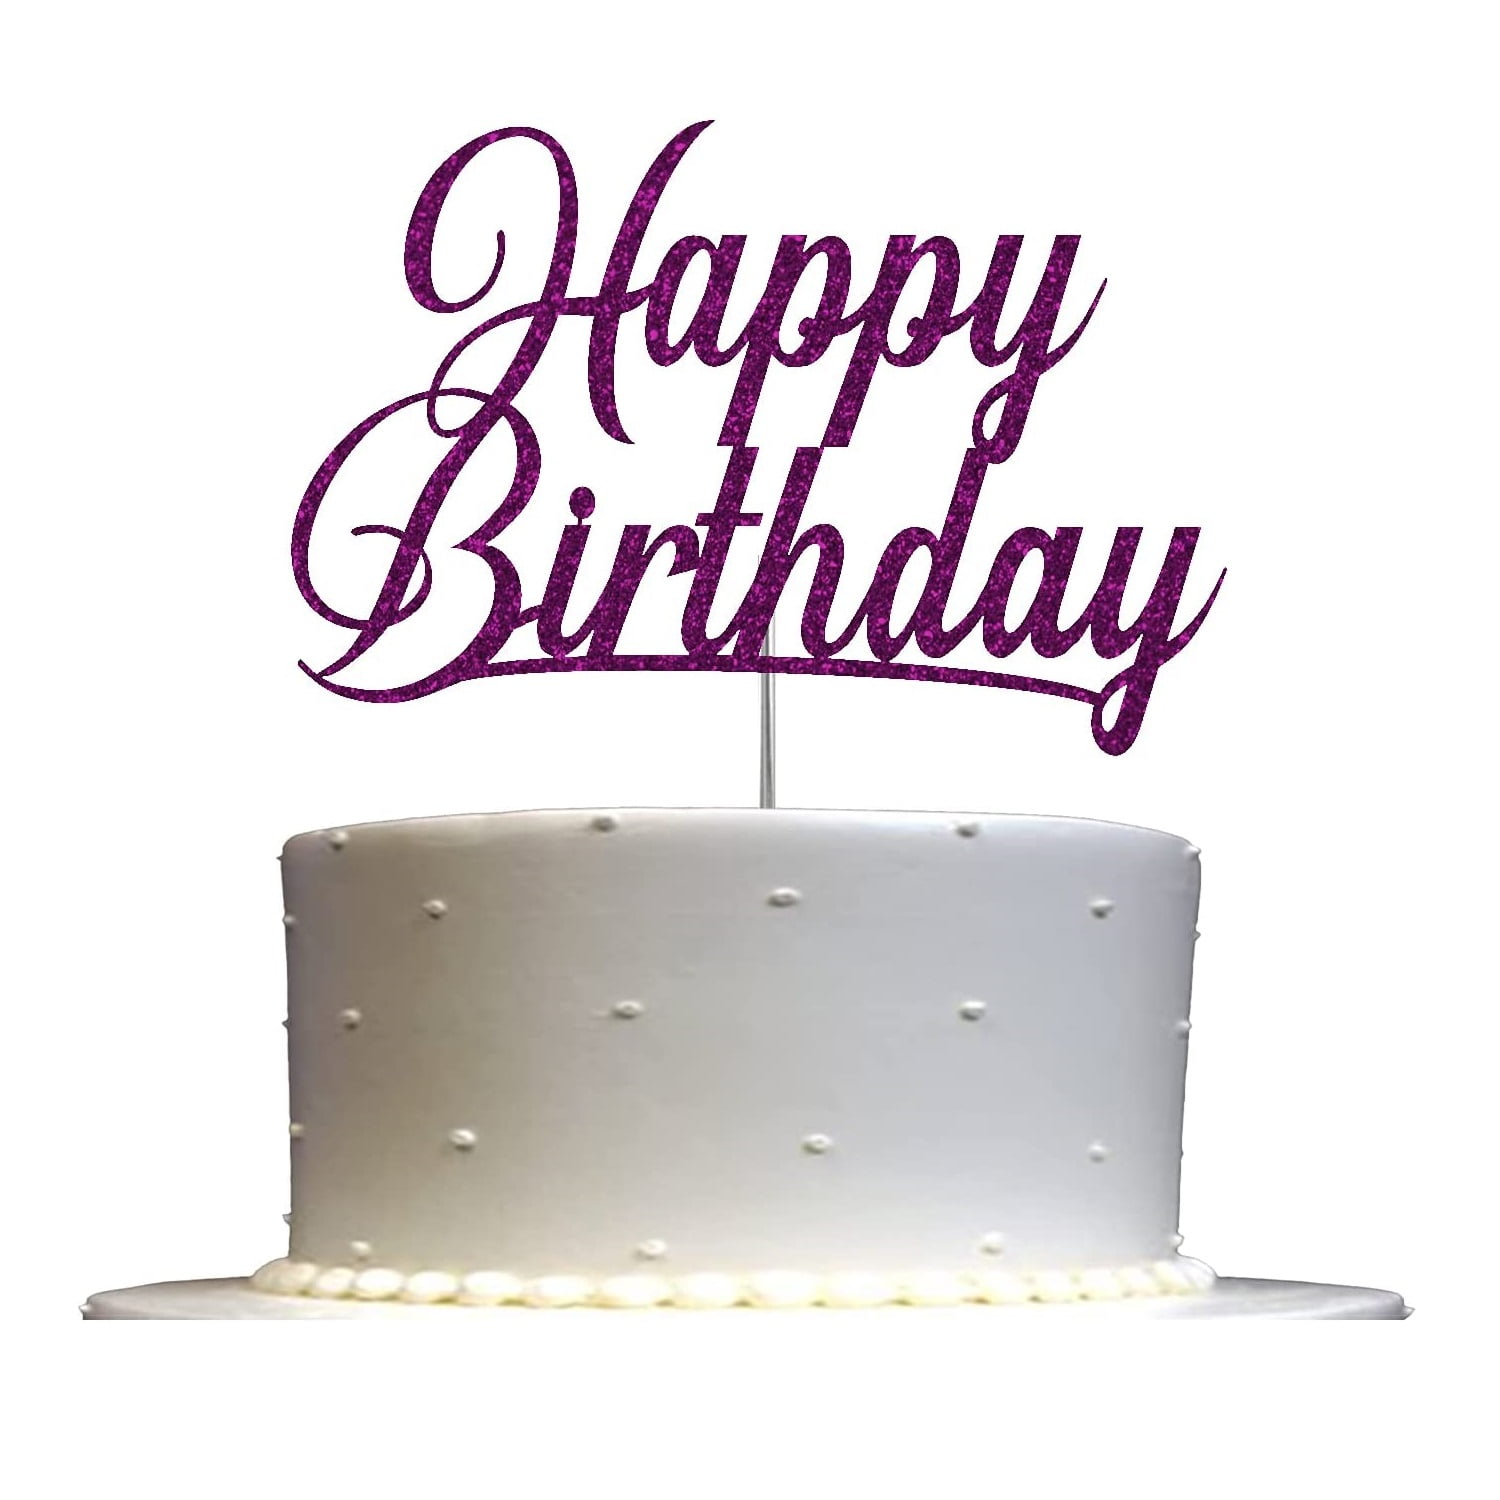 Happy Birthday Glitter Cake Topper, Birthday Party Decorations ...